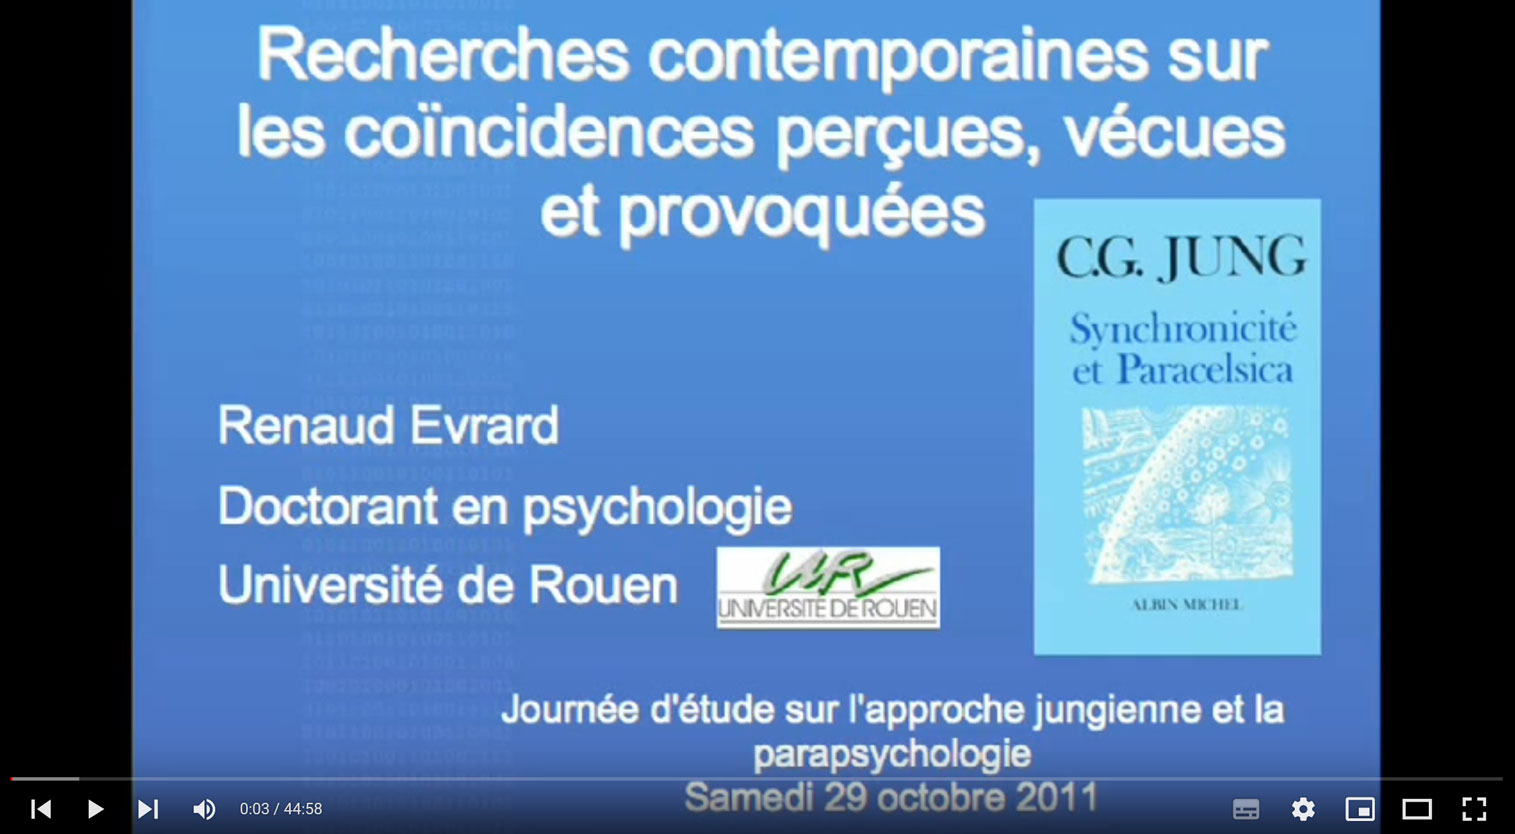 Conférence de Renaud Evrard sur les coïncidences